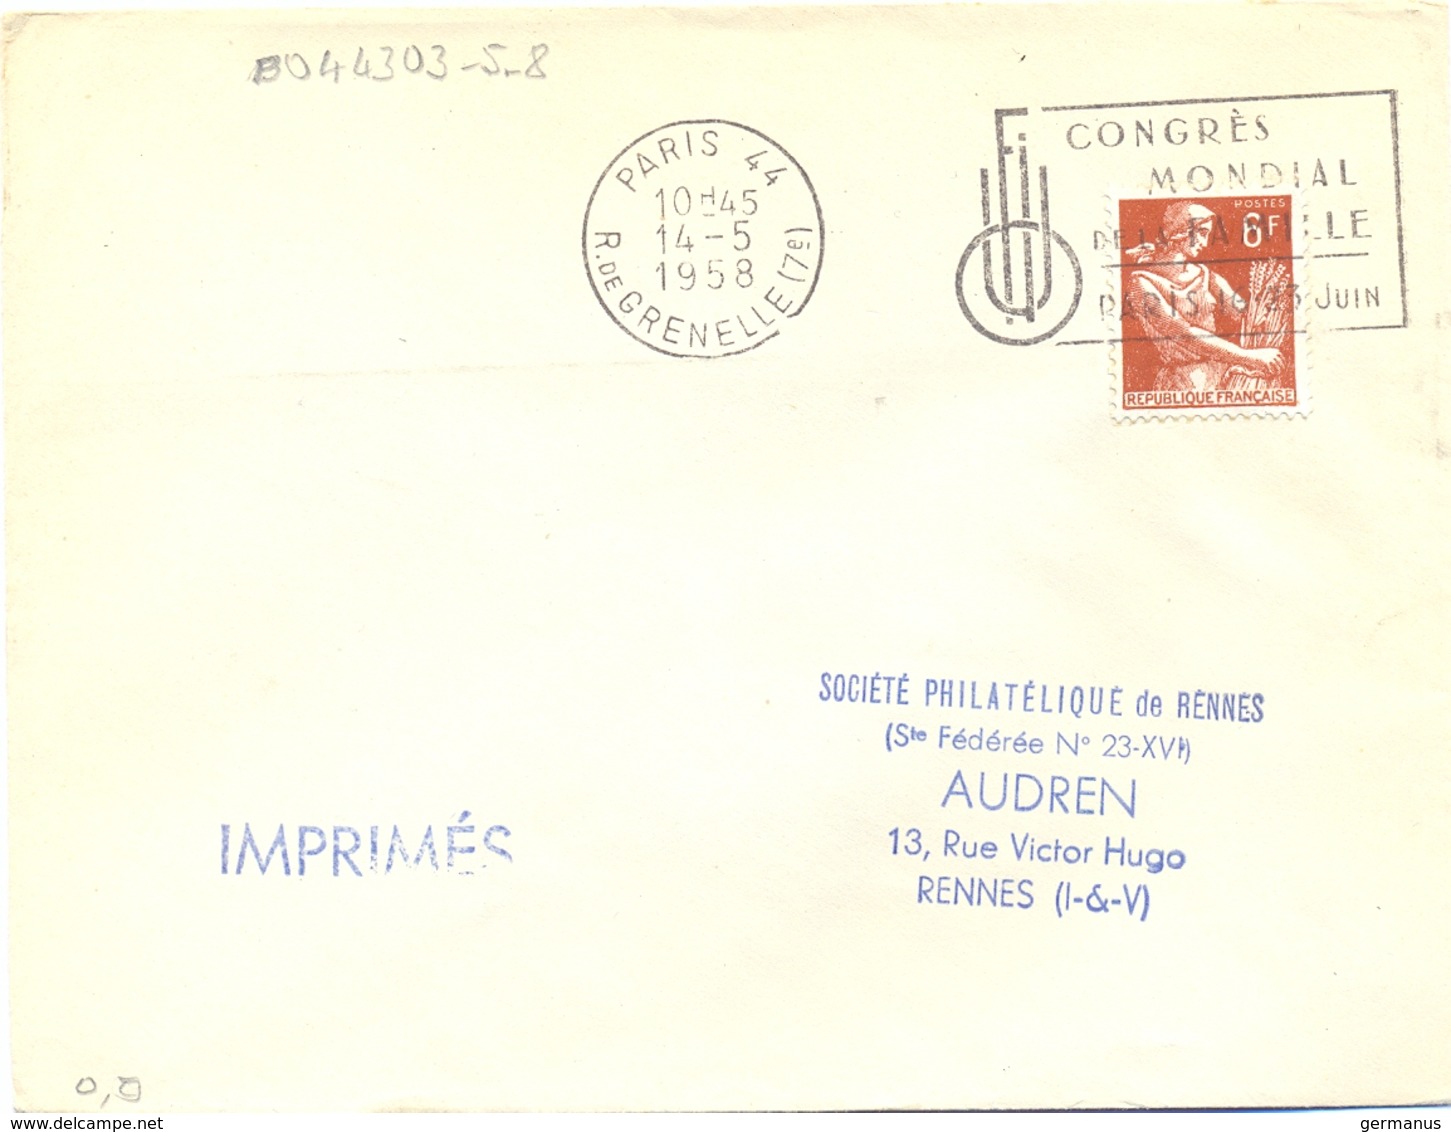 PARIS 44 R. DE GRENELLE (17e) OMec SECAP 14-5-1958 CONGRÈS / MONDIAL / DE LA FAMILLE / PARIS 16.23 JUIN - Mechanical Postmarks (Advertisement)